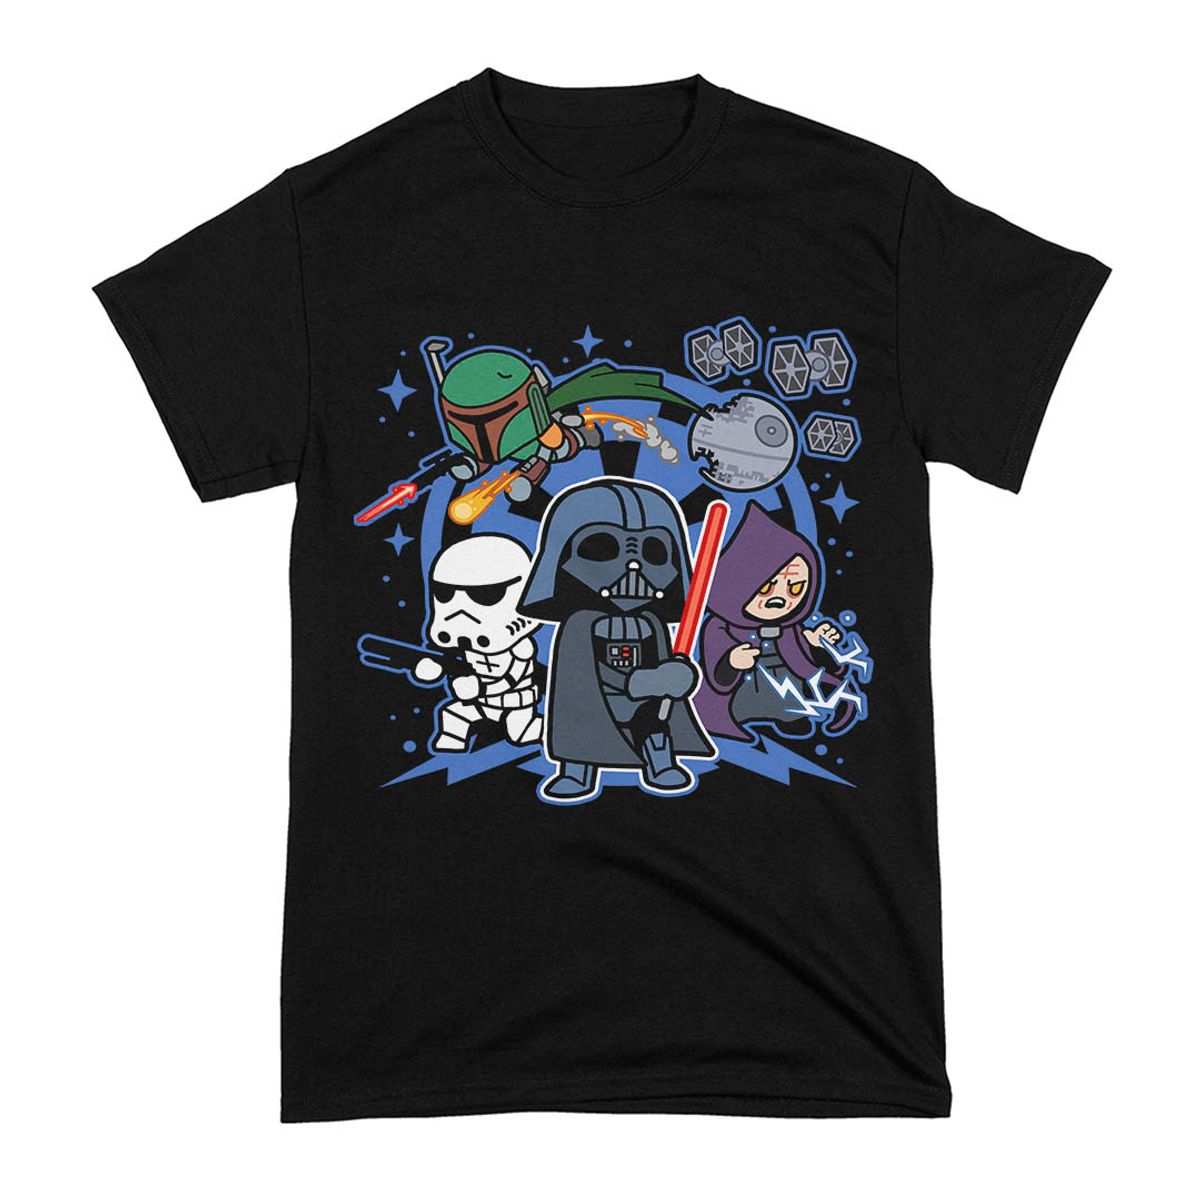 Nome do produto: Camiseta Darth Vader and Friends